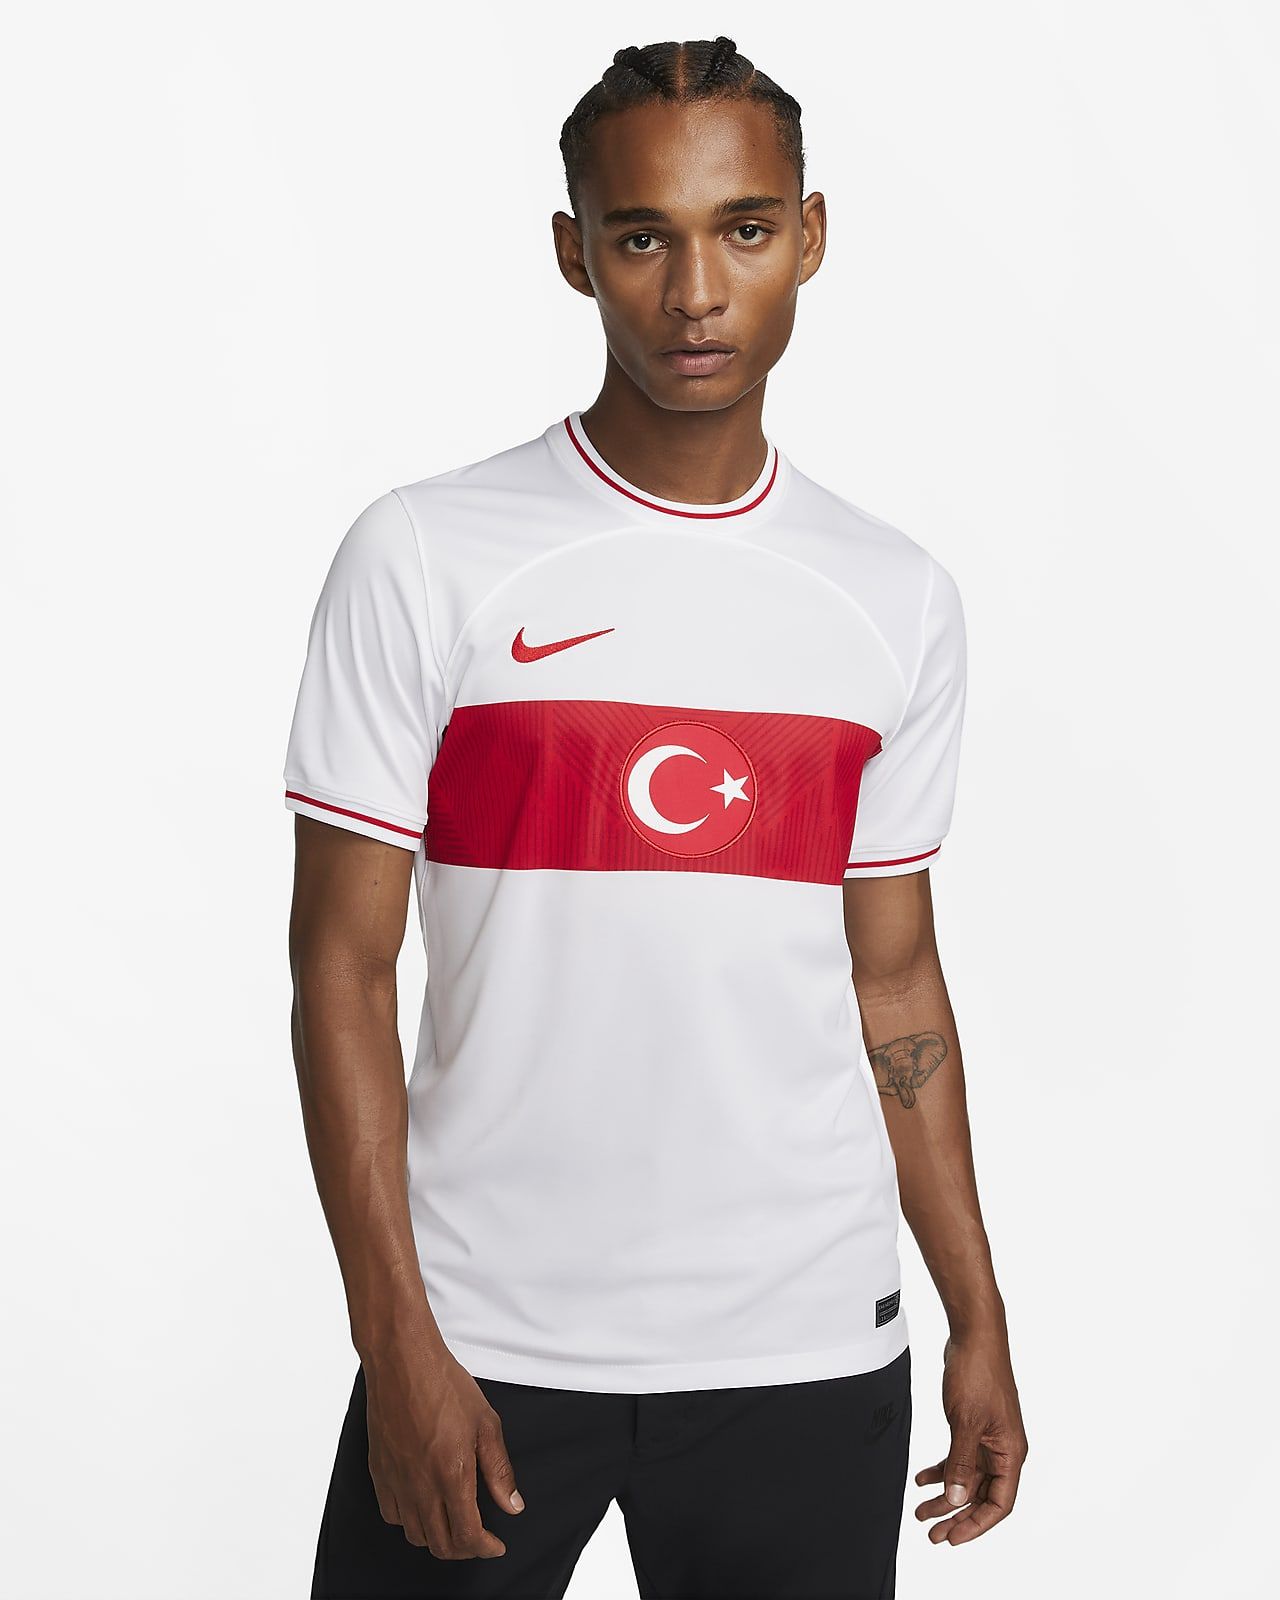 Nike в Турции. Nike Turkey. Найк Турция. Найк турция сайт